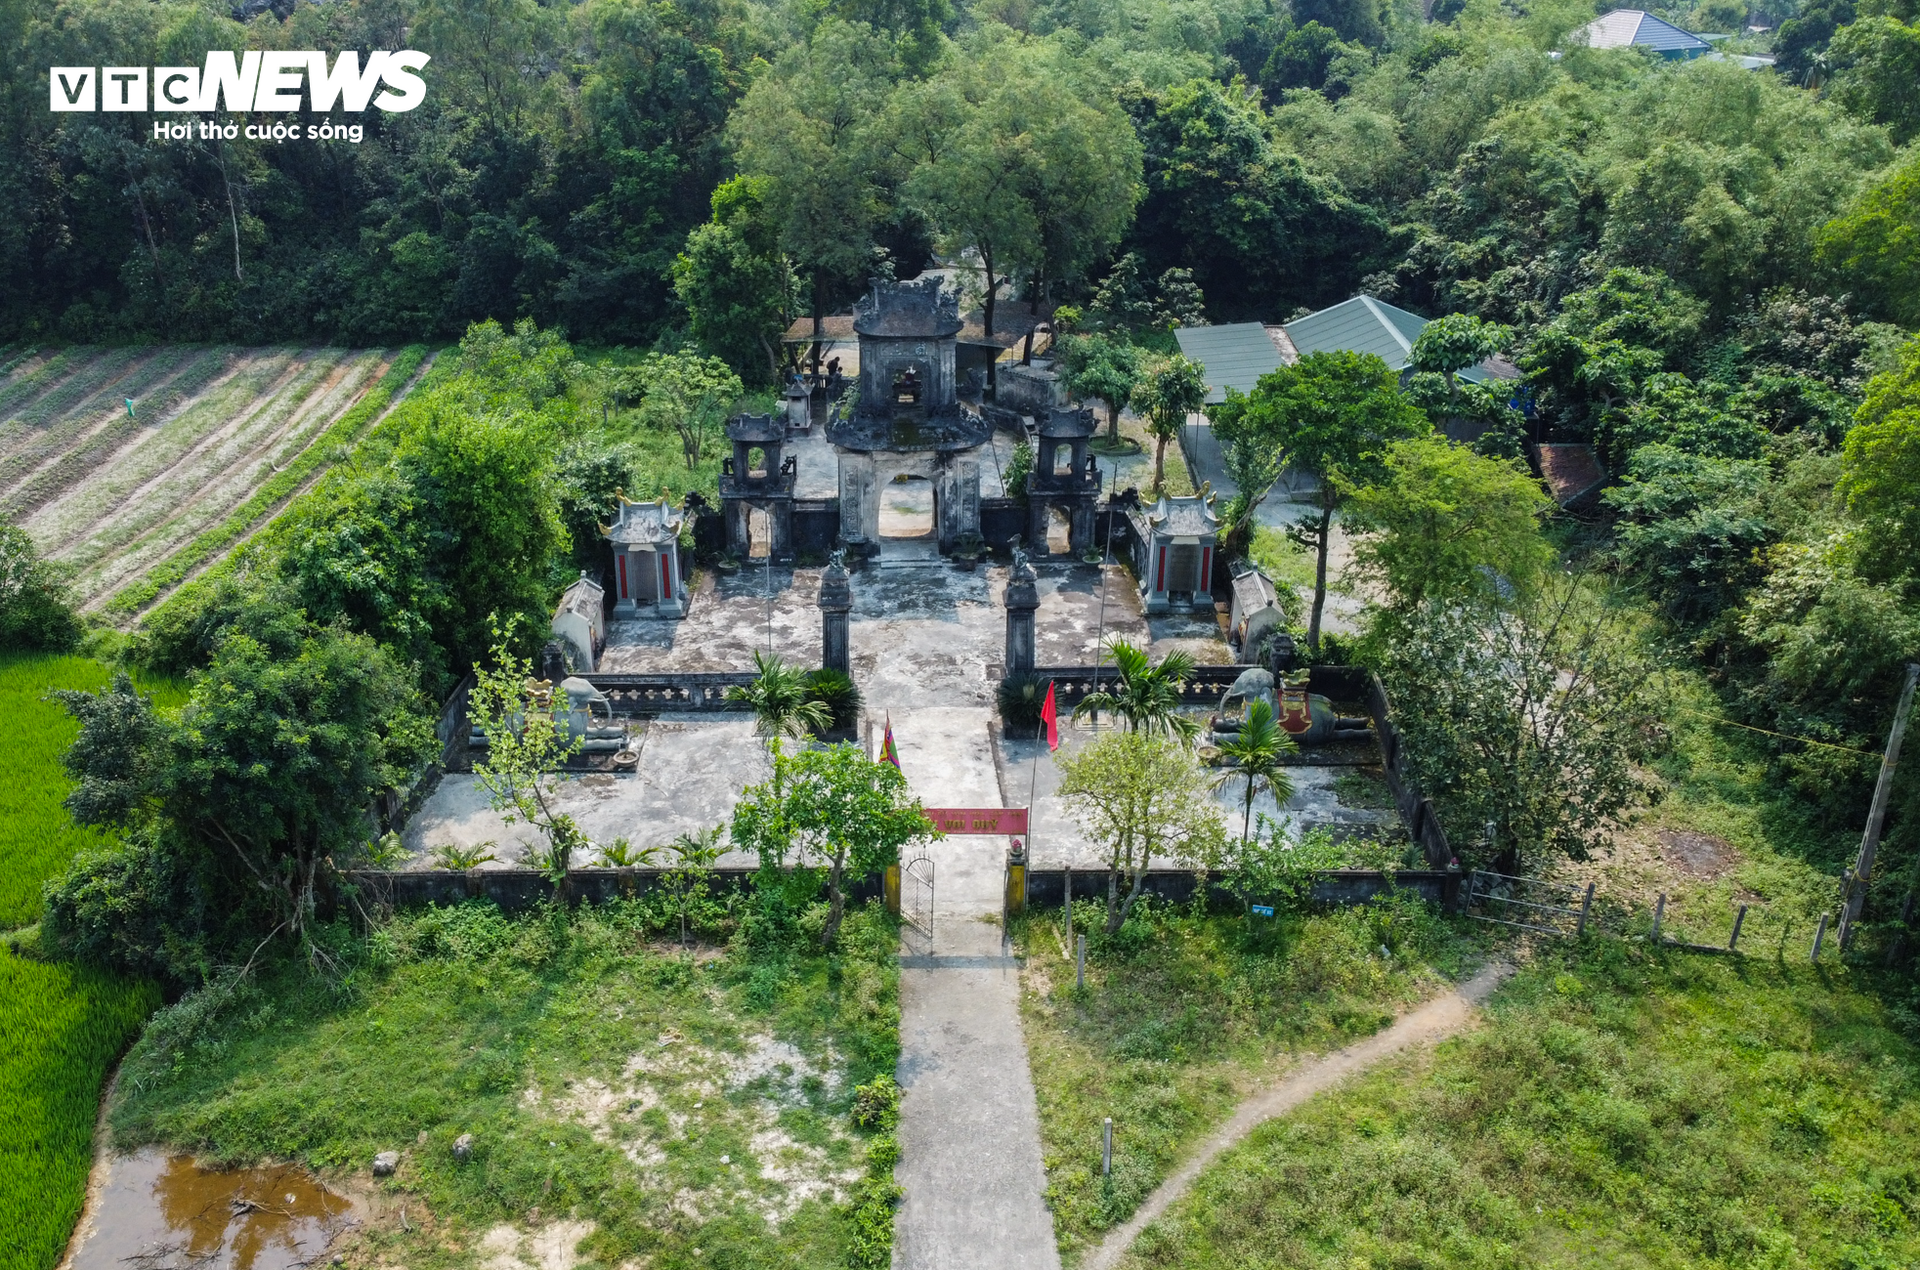 Ngôi đền 700 tuổi ở Hà Tĩnh ‘kêu cứu’ - Ảnh 1.